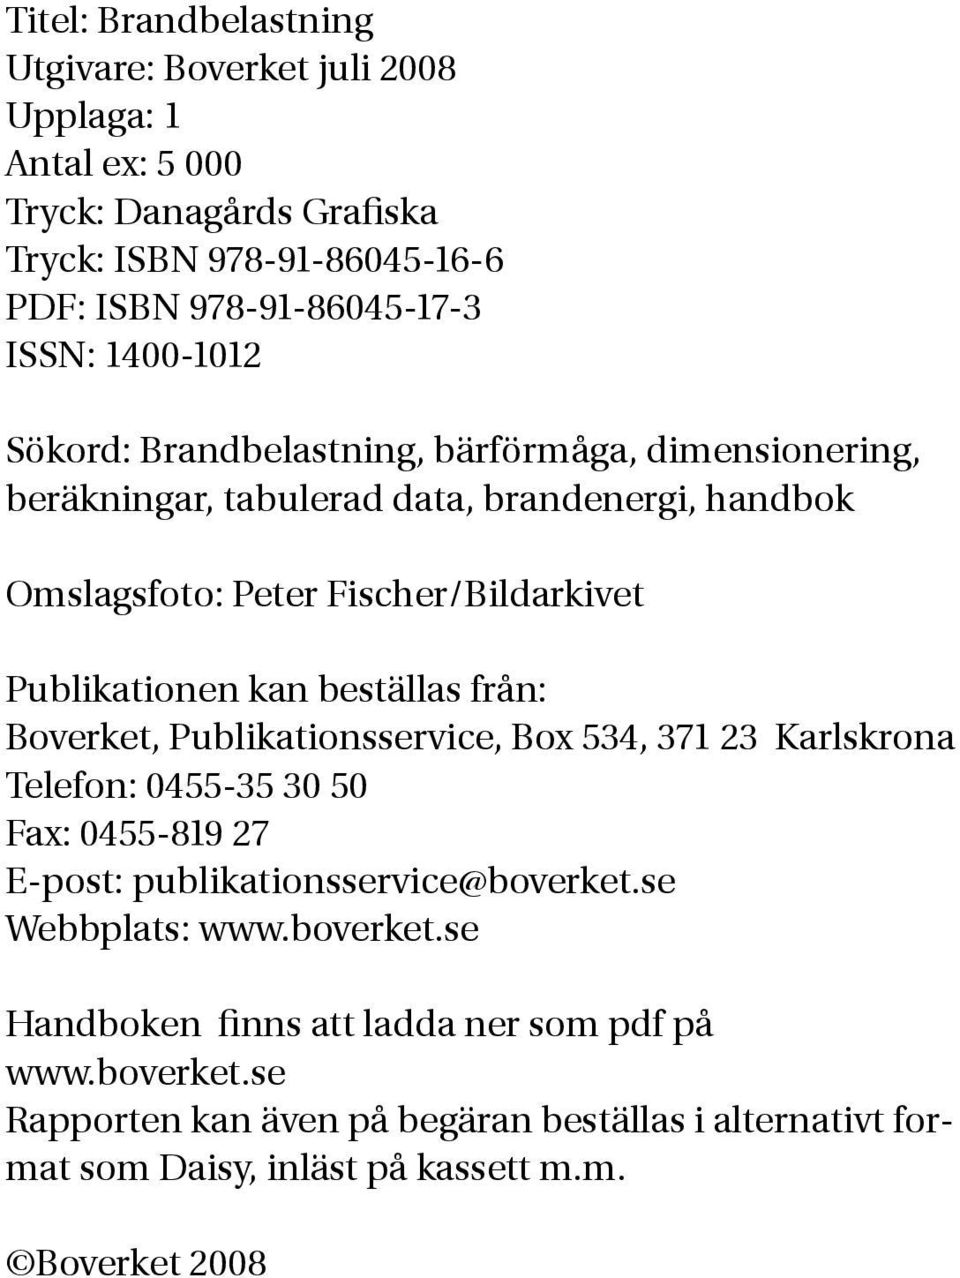 beställas från: Boverket, Publikationsservice, Box 534, 371 23 Karlskrona Telefon: 0455-35 30 50 Fax: 0455-819 27 E-post: publikationsservice@boverket.se Webbplats: www.